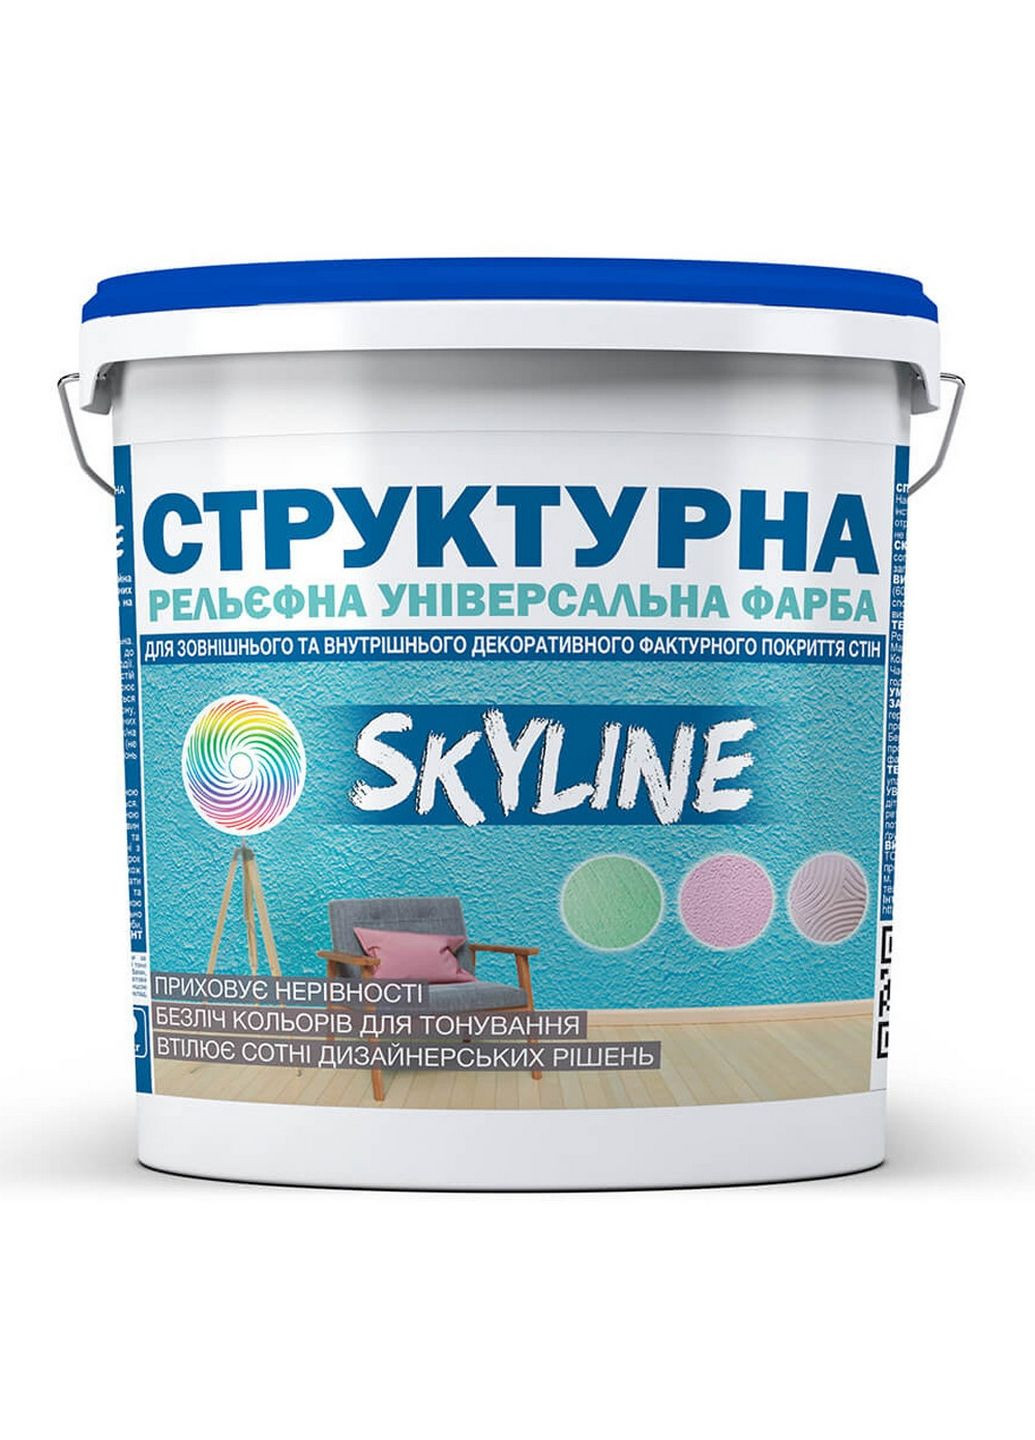 Краска СТРУКТУРНА для створення рельєфу стін та потолків 24 кг SkyLine (283327328)